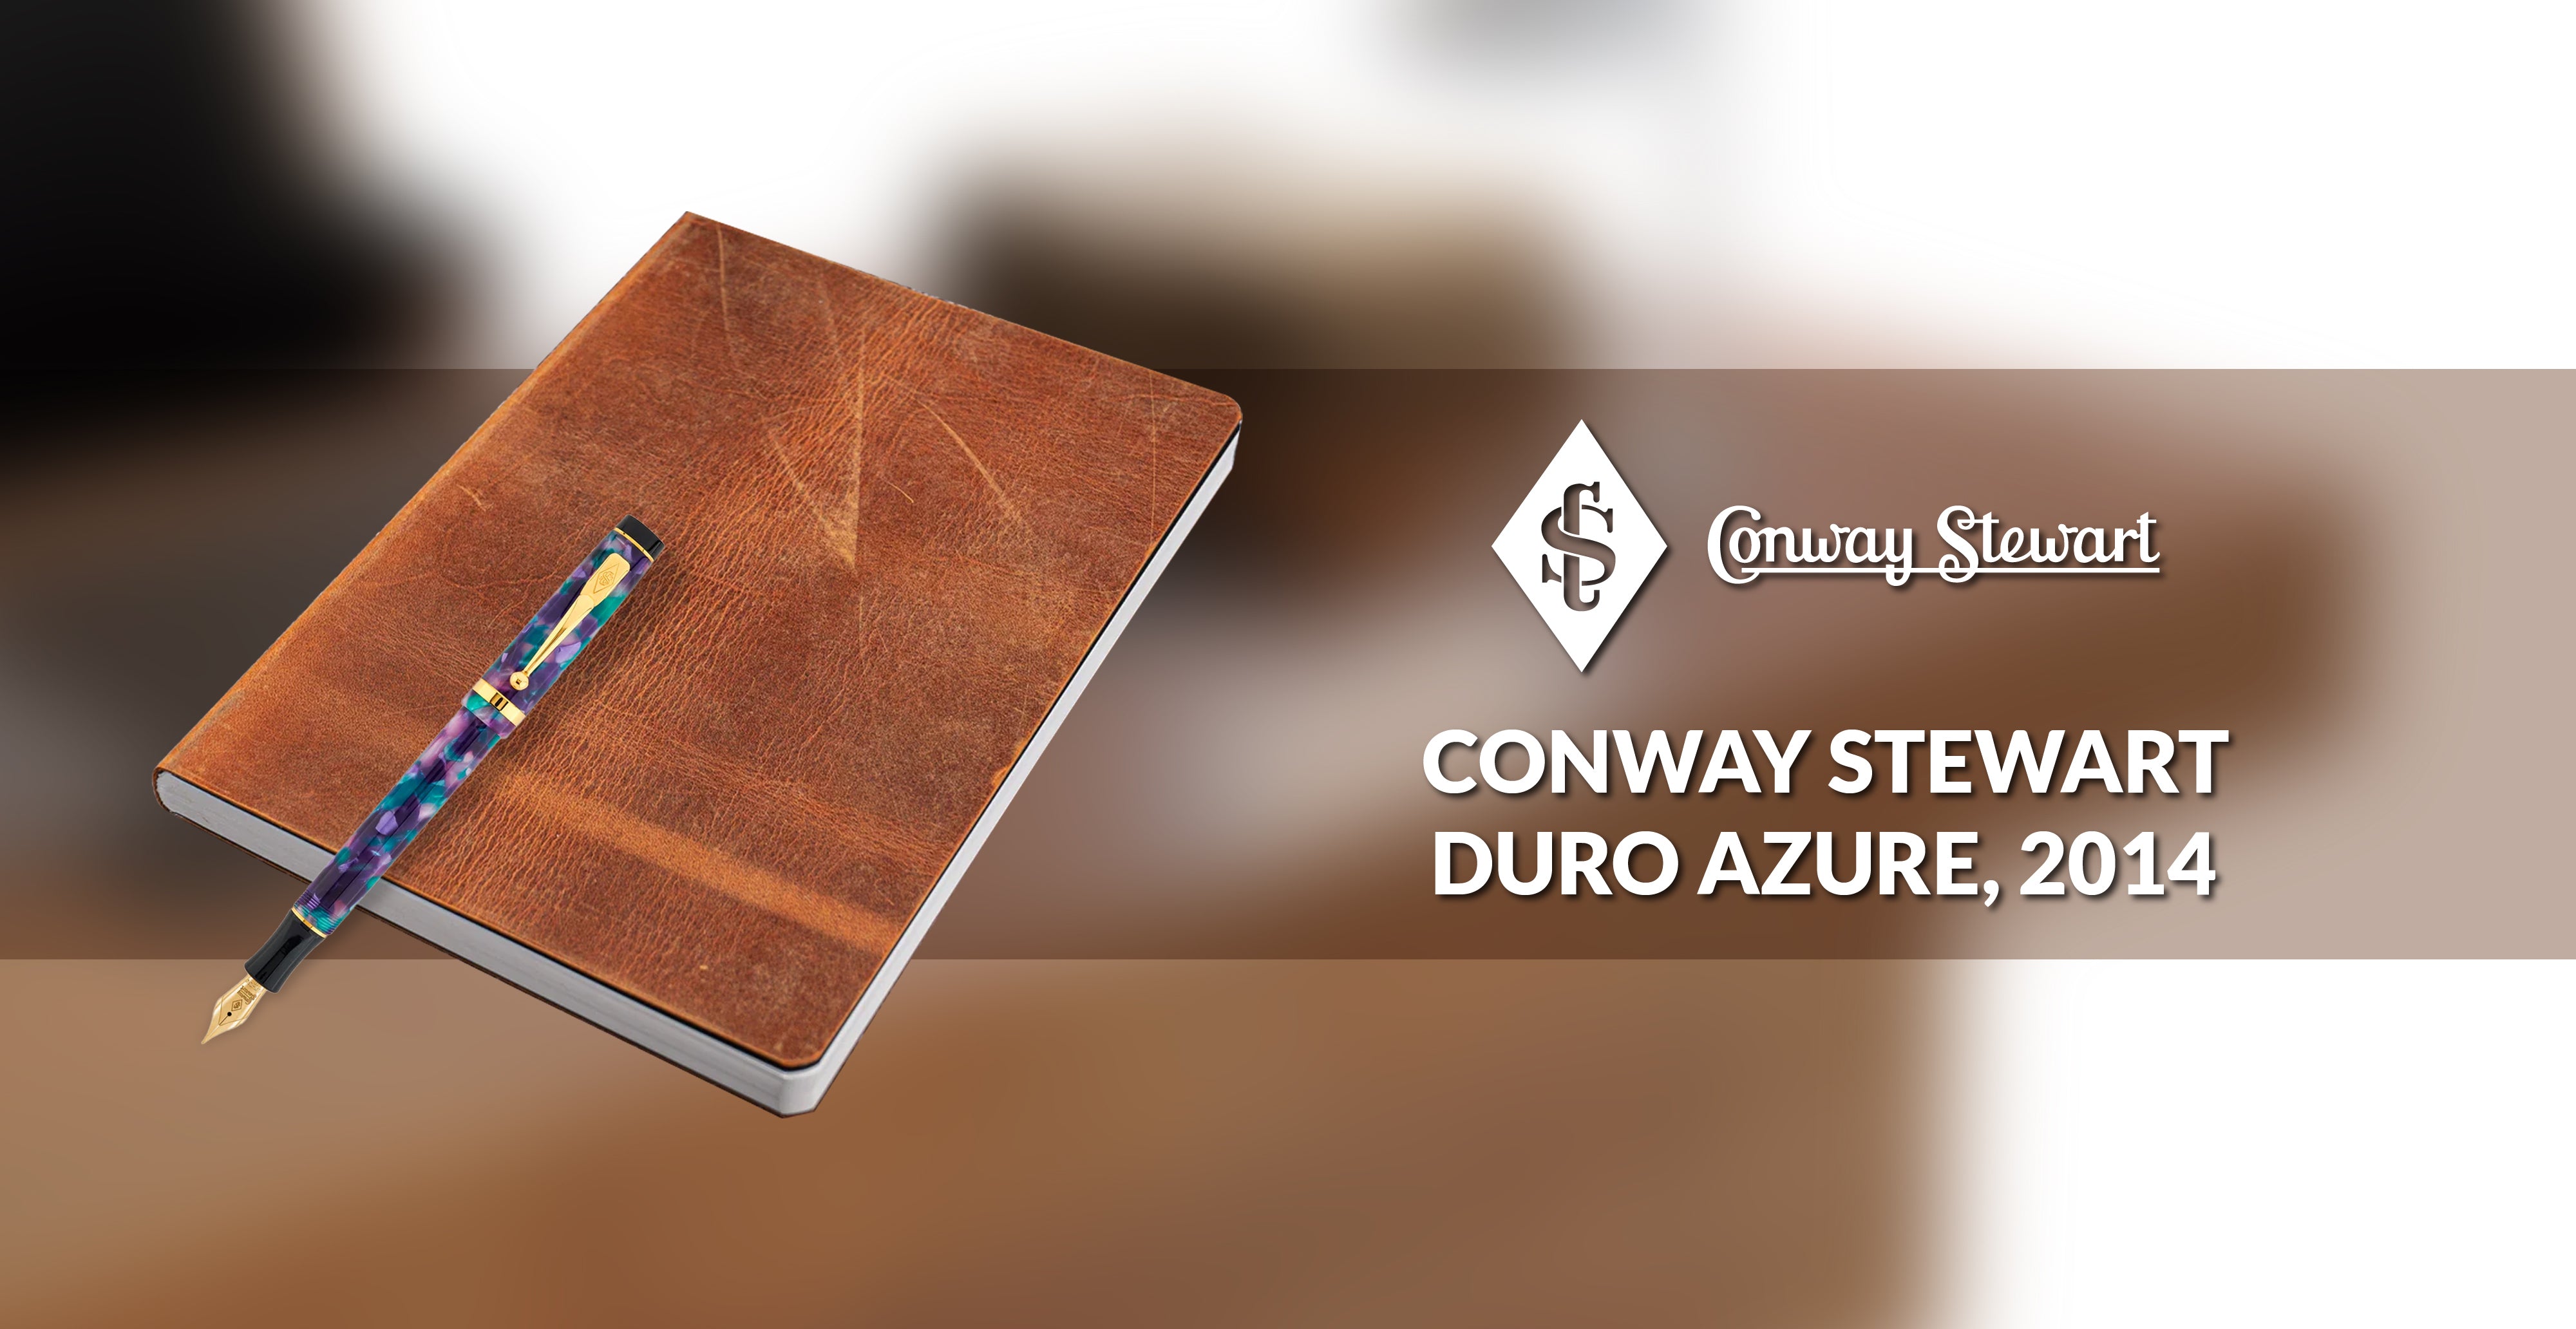 Conway Stewart Duro Azure, 2014